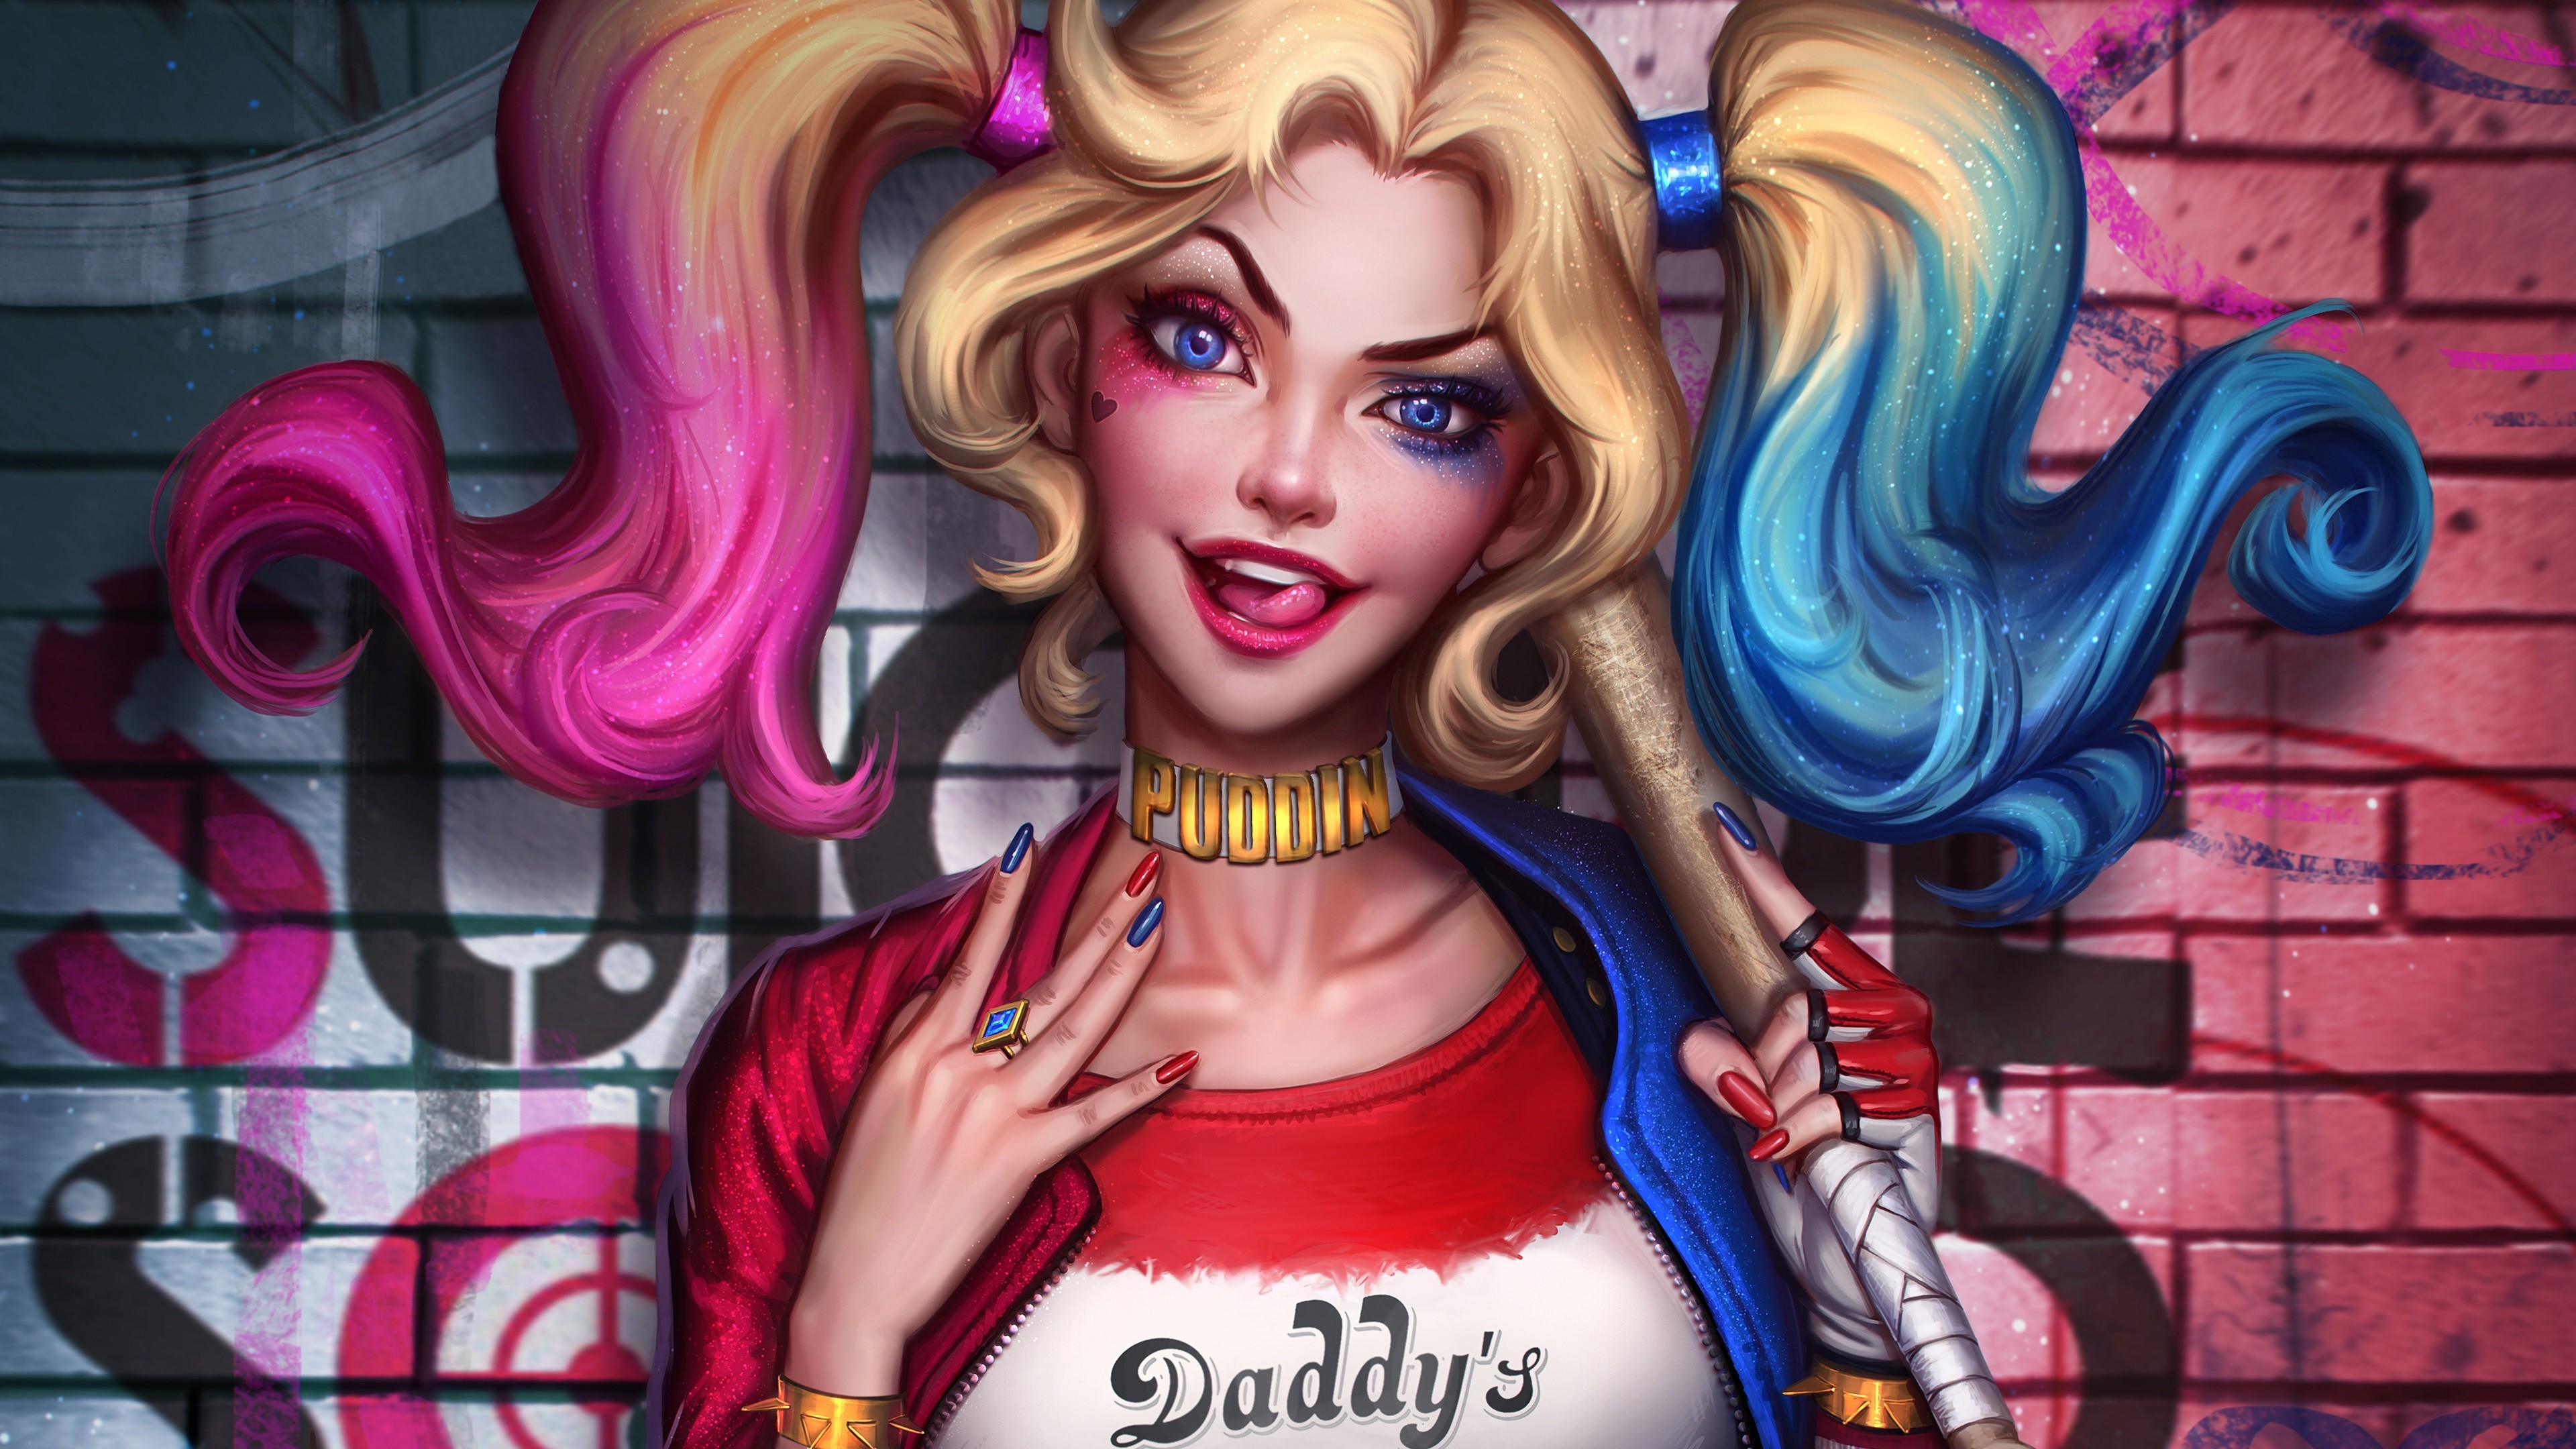 3840x2160 Harley Quinn, DC Comics heroes, Suicide Squad wallpaper